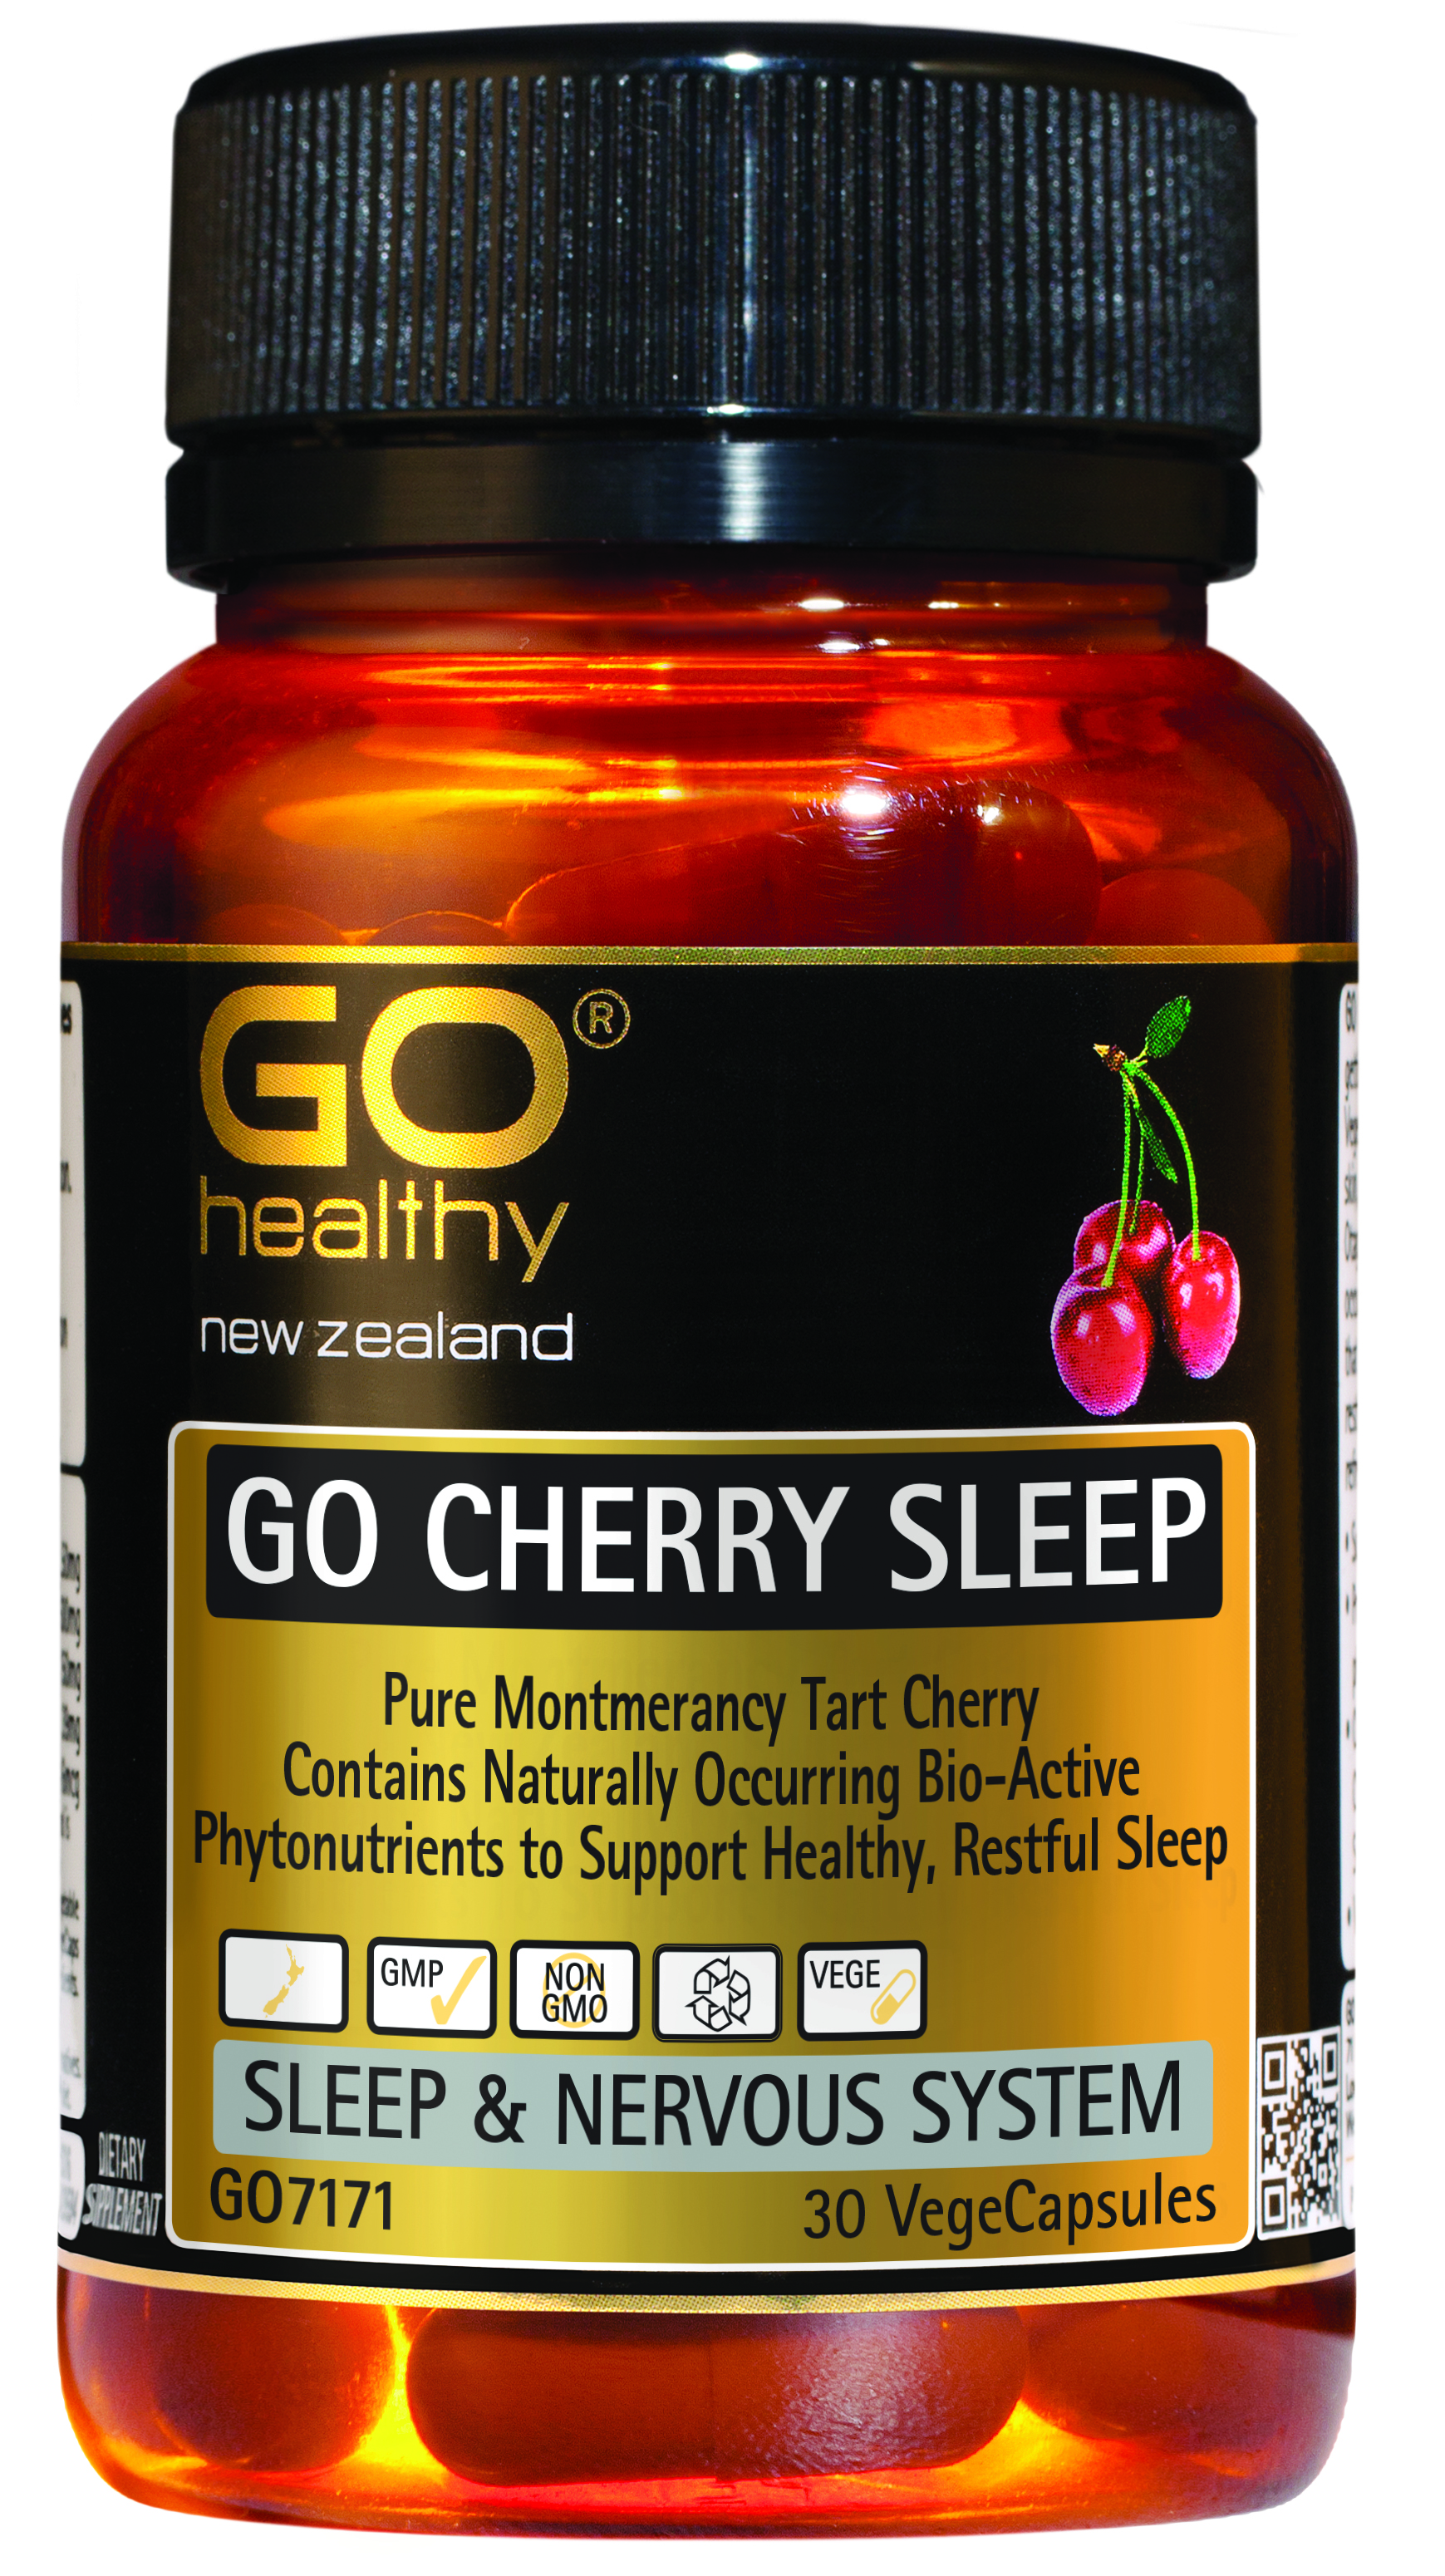 Go Healthy Cherry Sleep 30 Vege Capsules